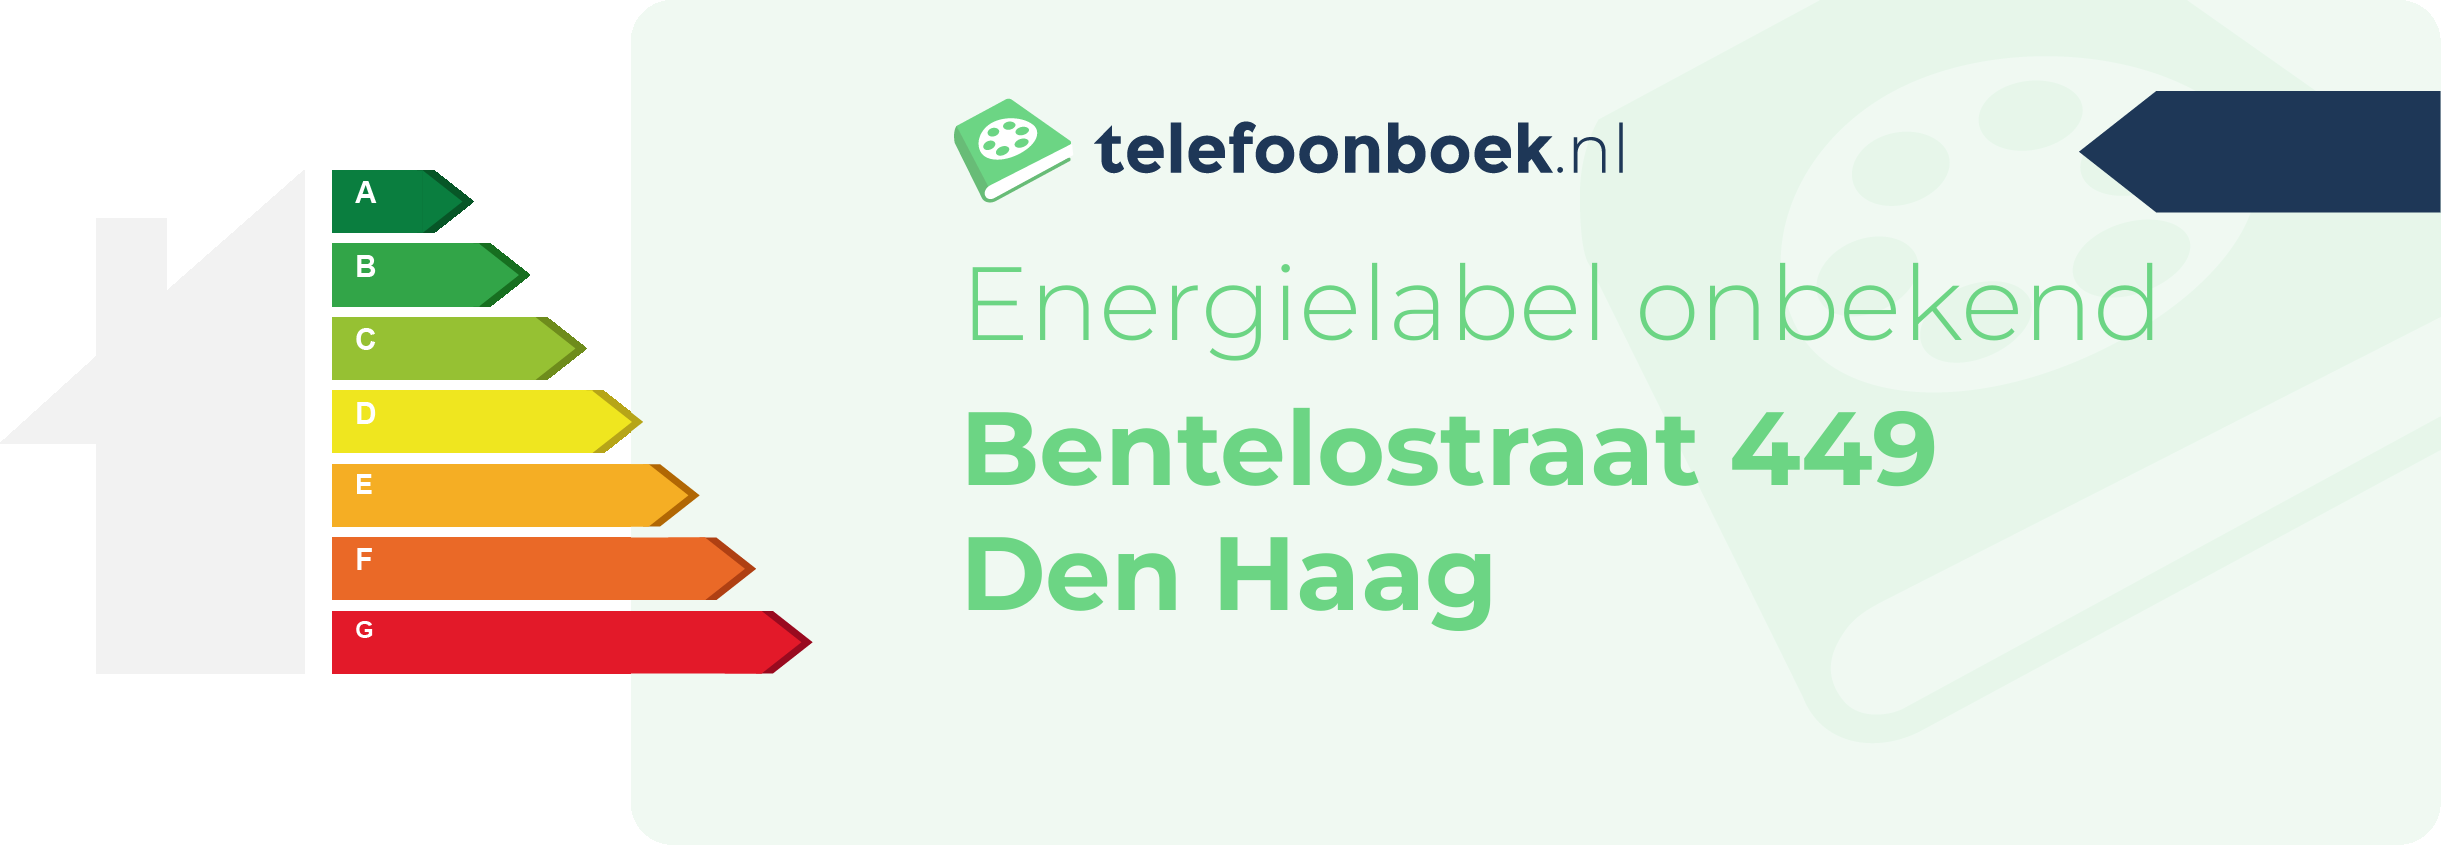 Energielabel Bentelostraat 449 Den Haag